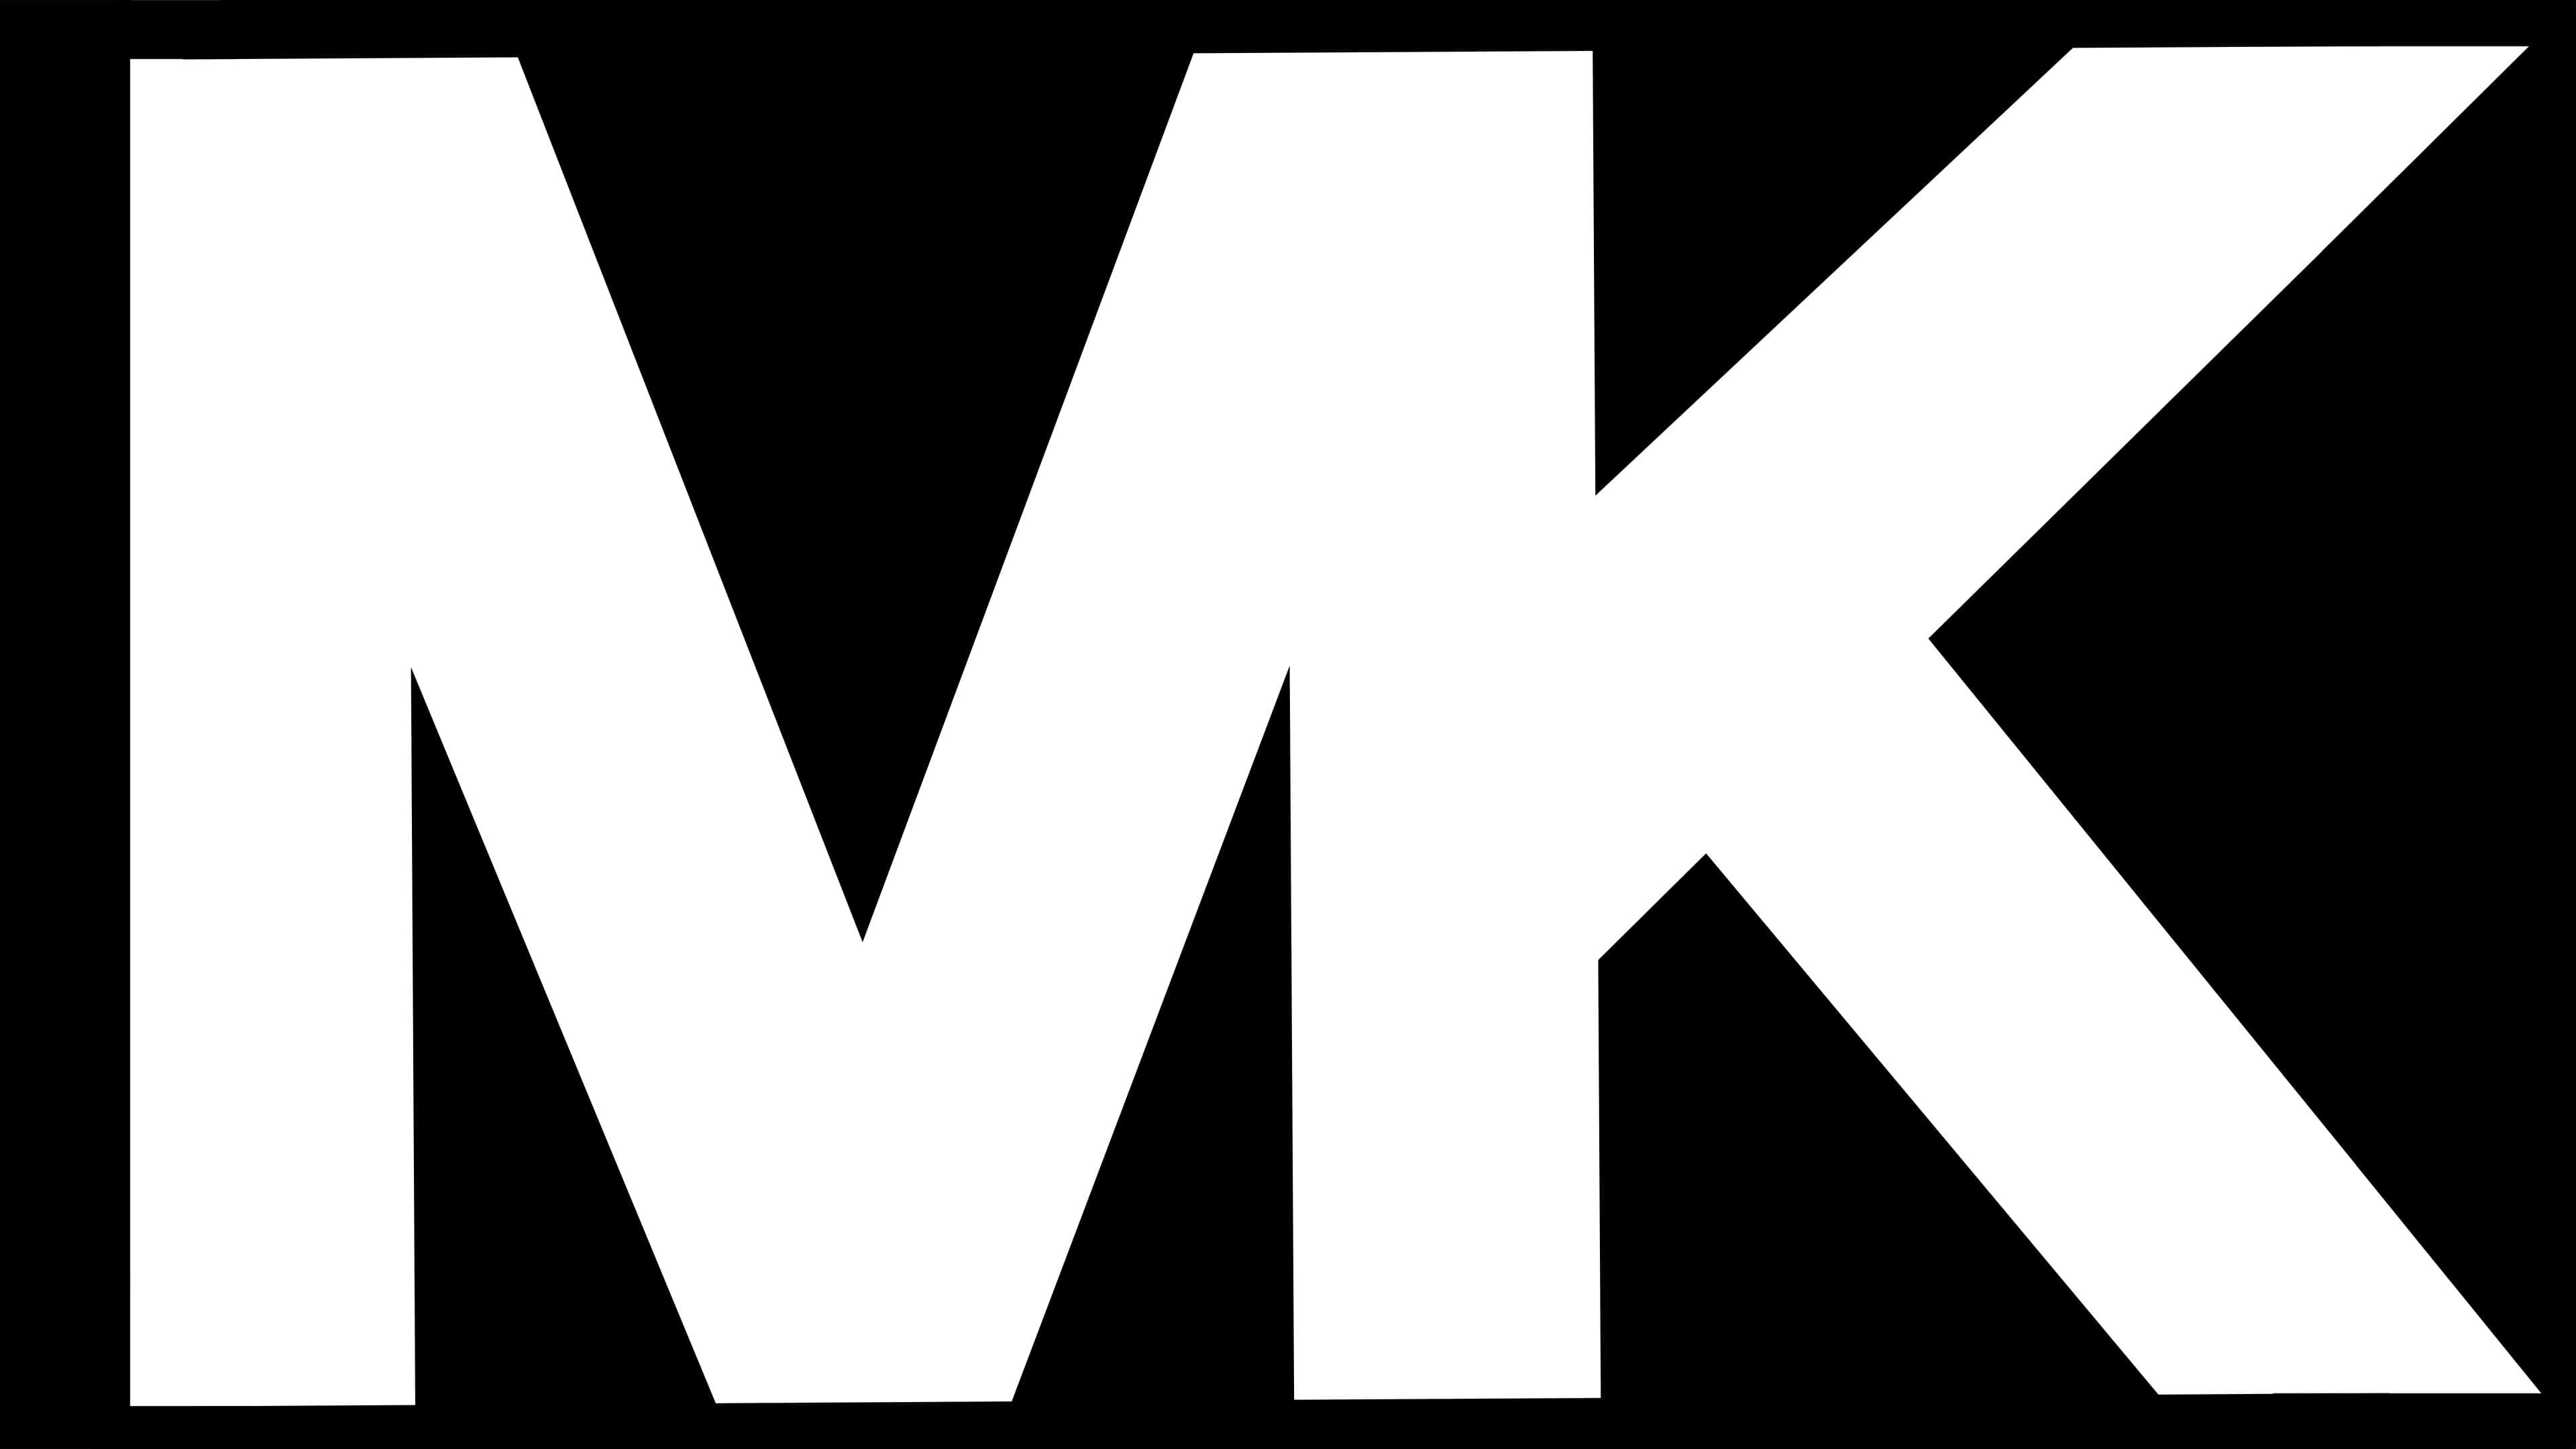 Michael Kors, Significado Del Logotipo, PNG, Vector, 3840x2160 4K Desktop